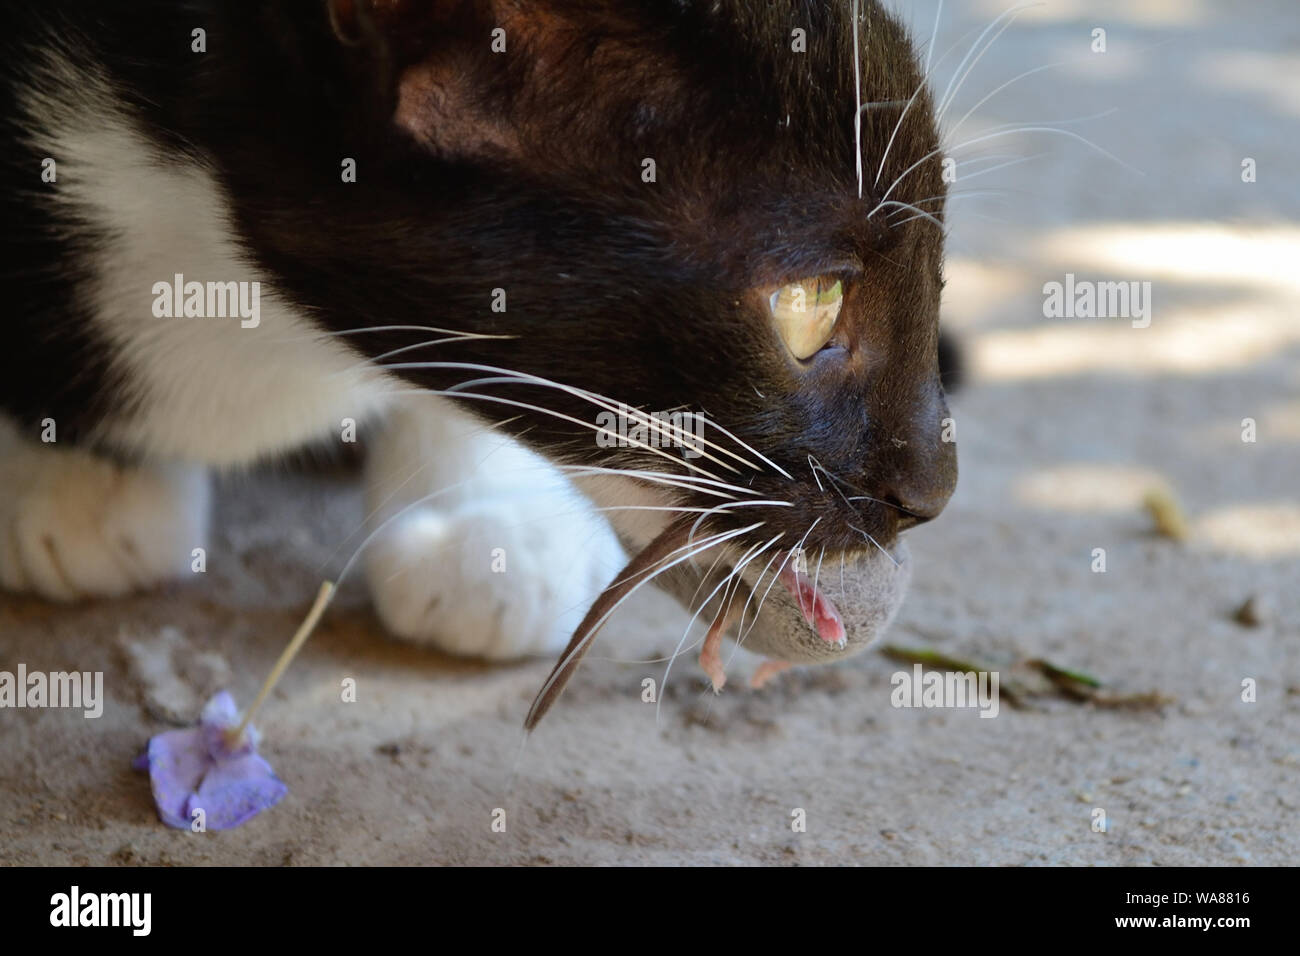 Gattino, giovane gatto caccia e prende il mouse. Catena alimentare animale, Felis catus Foto Stock